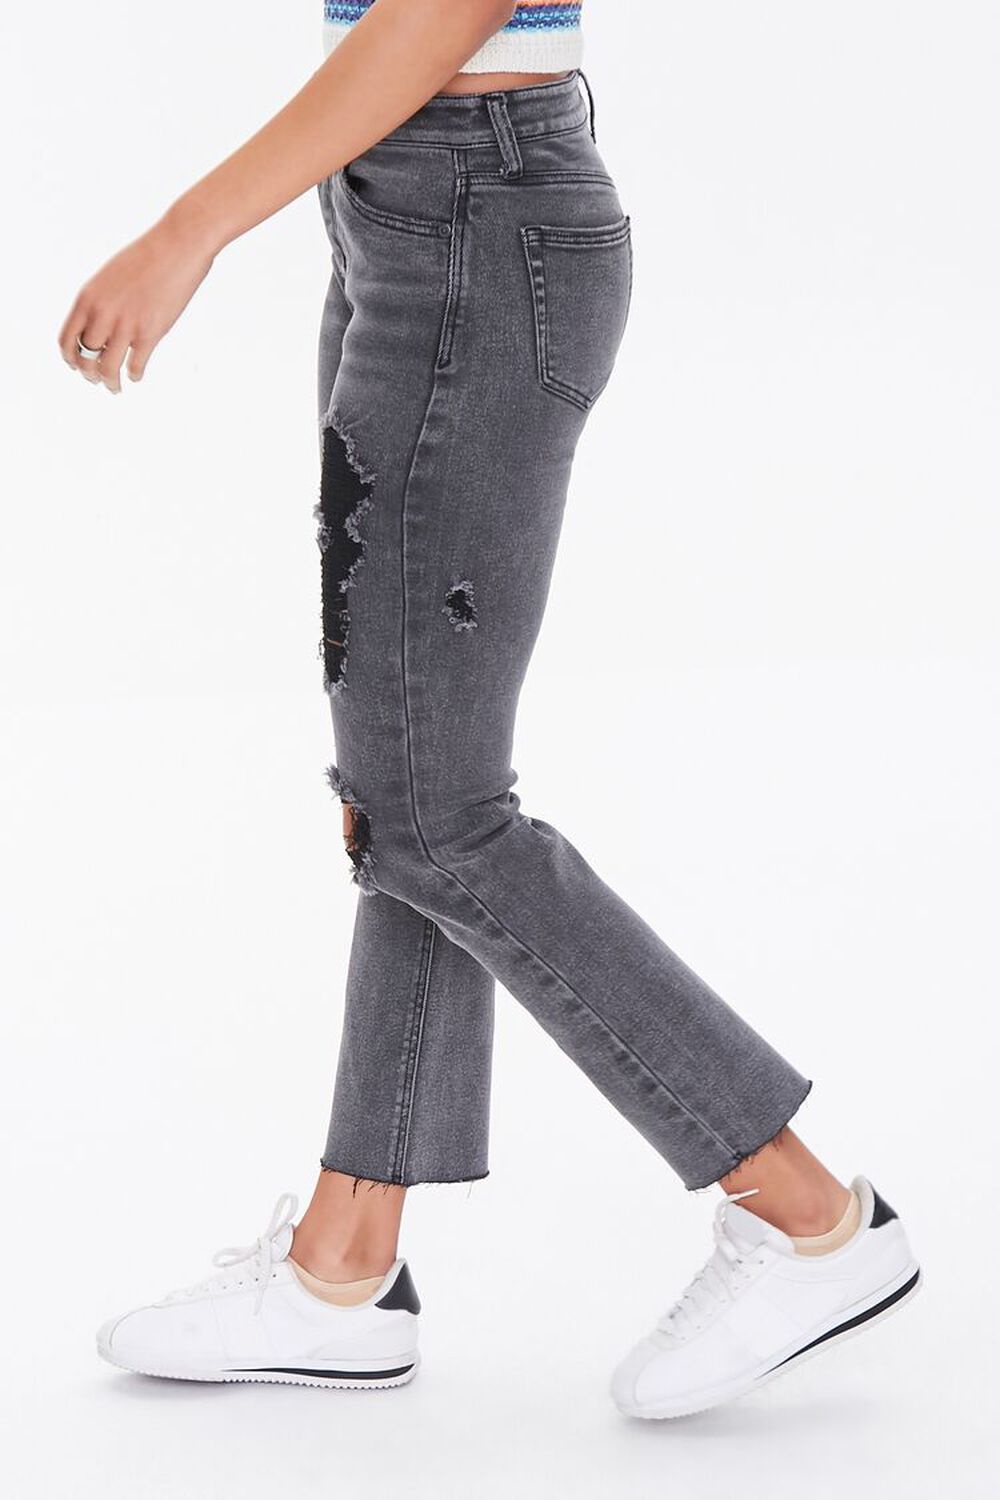 BLACK Sustainable Denim Boyfriend Jeans, image 2